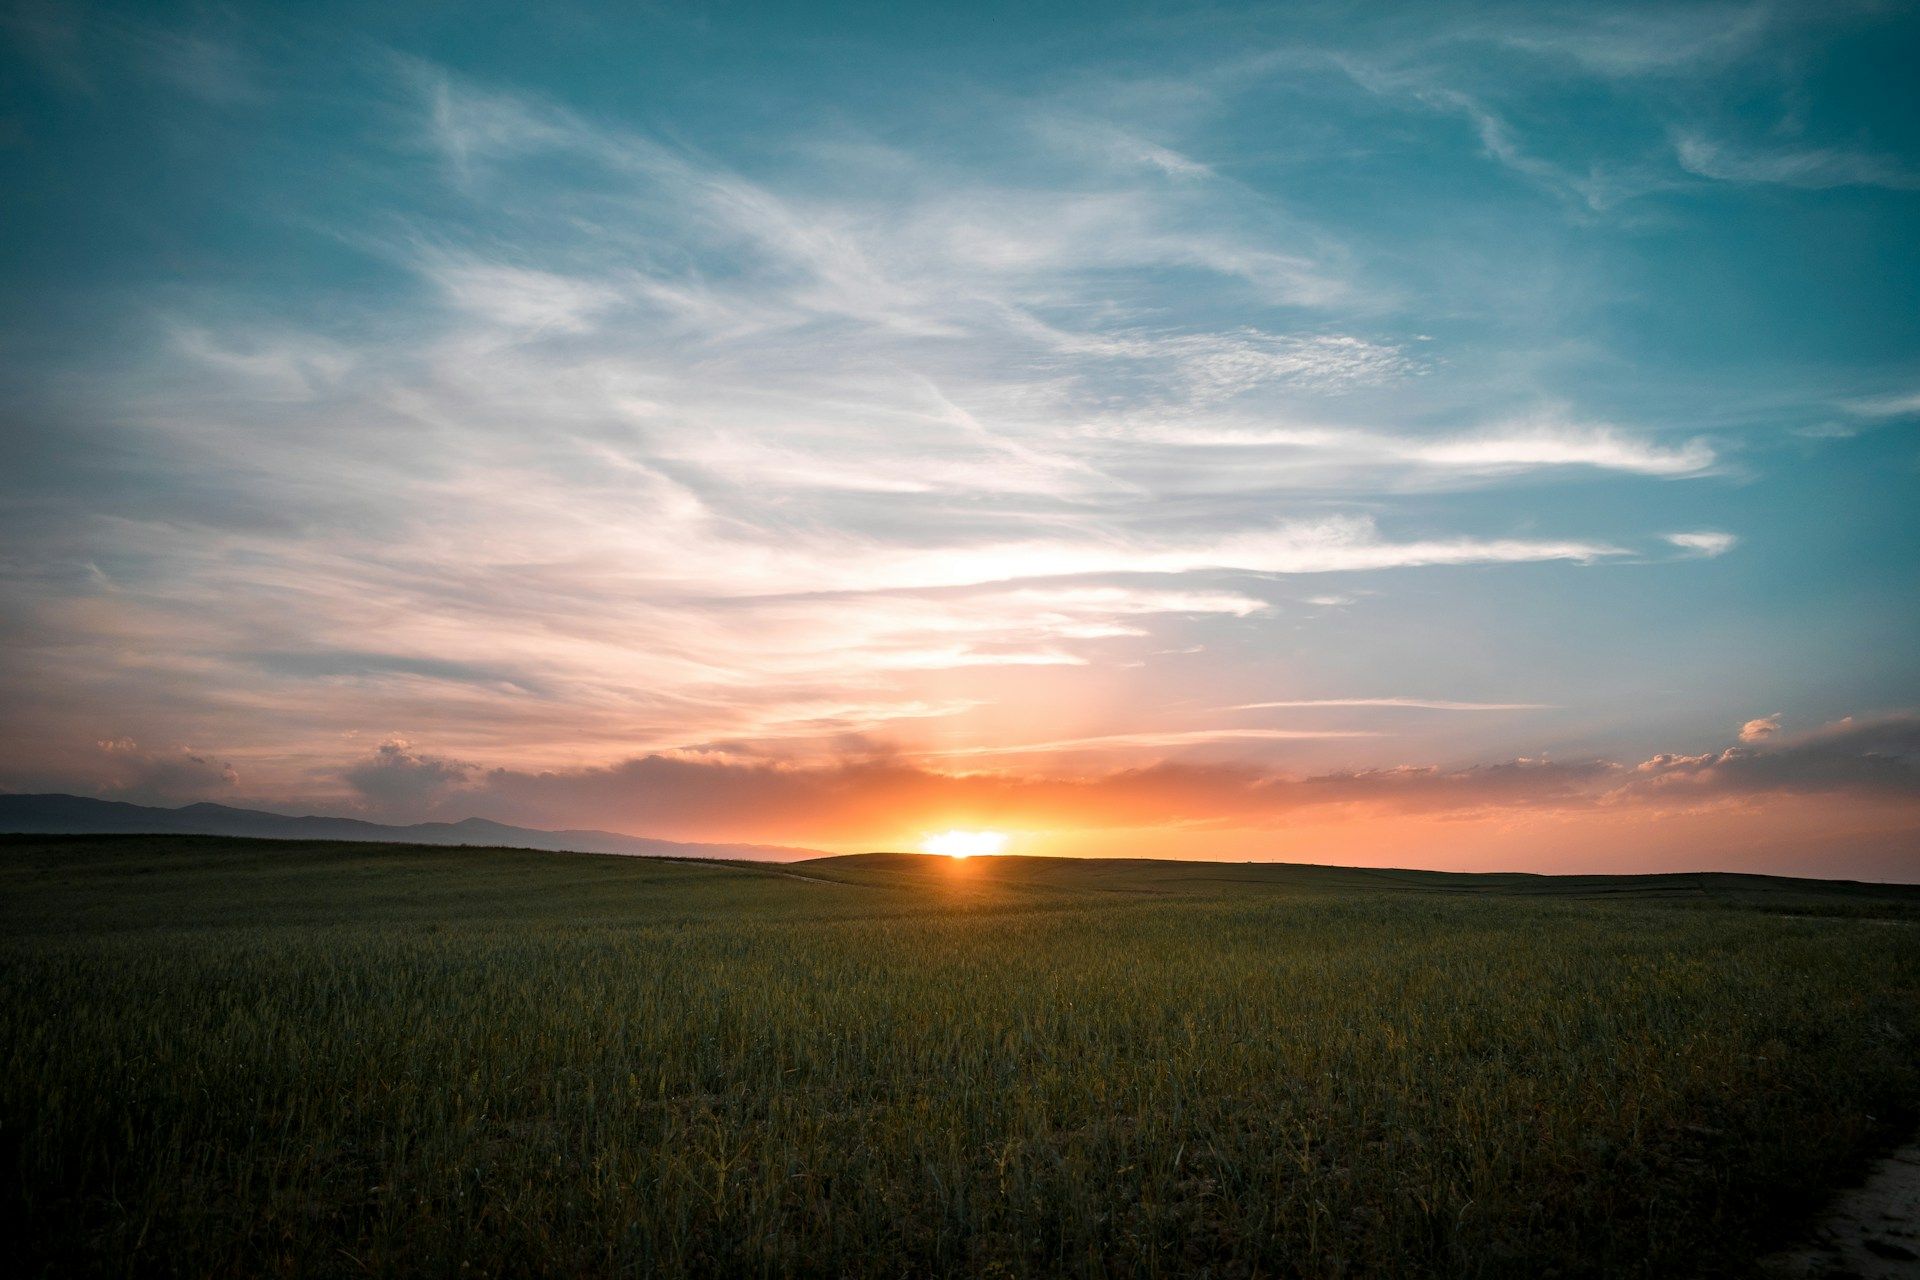 Uma fotografia de um sol nascente com um campo gramado em primeiro plano